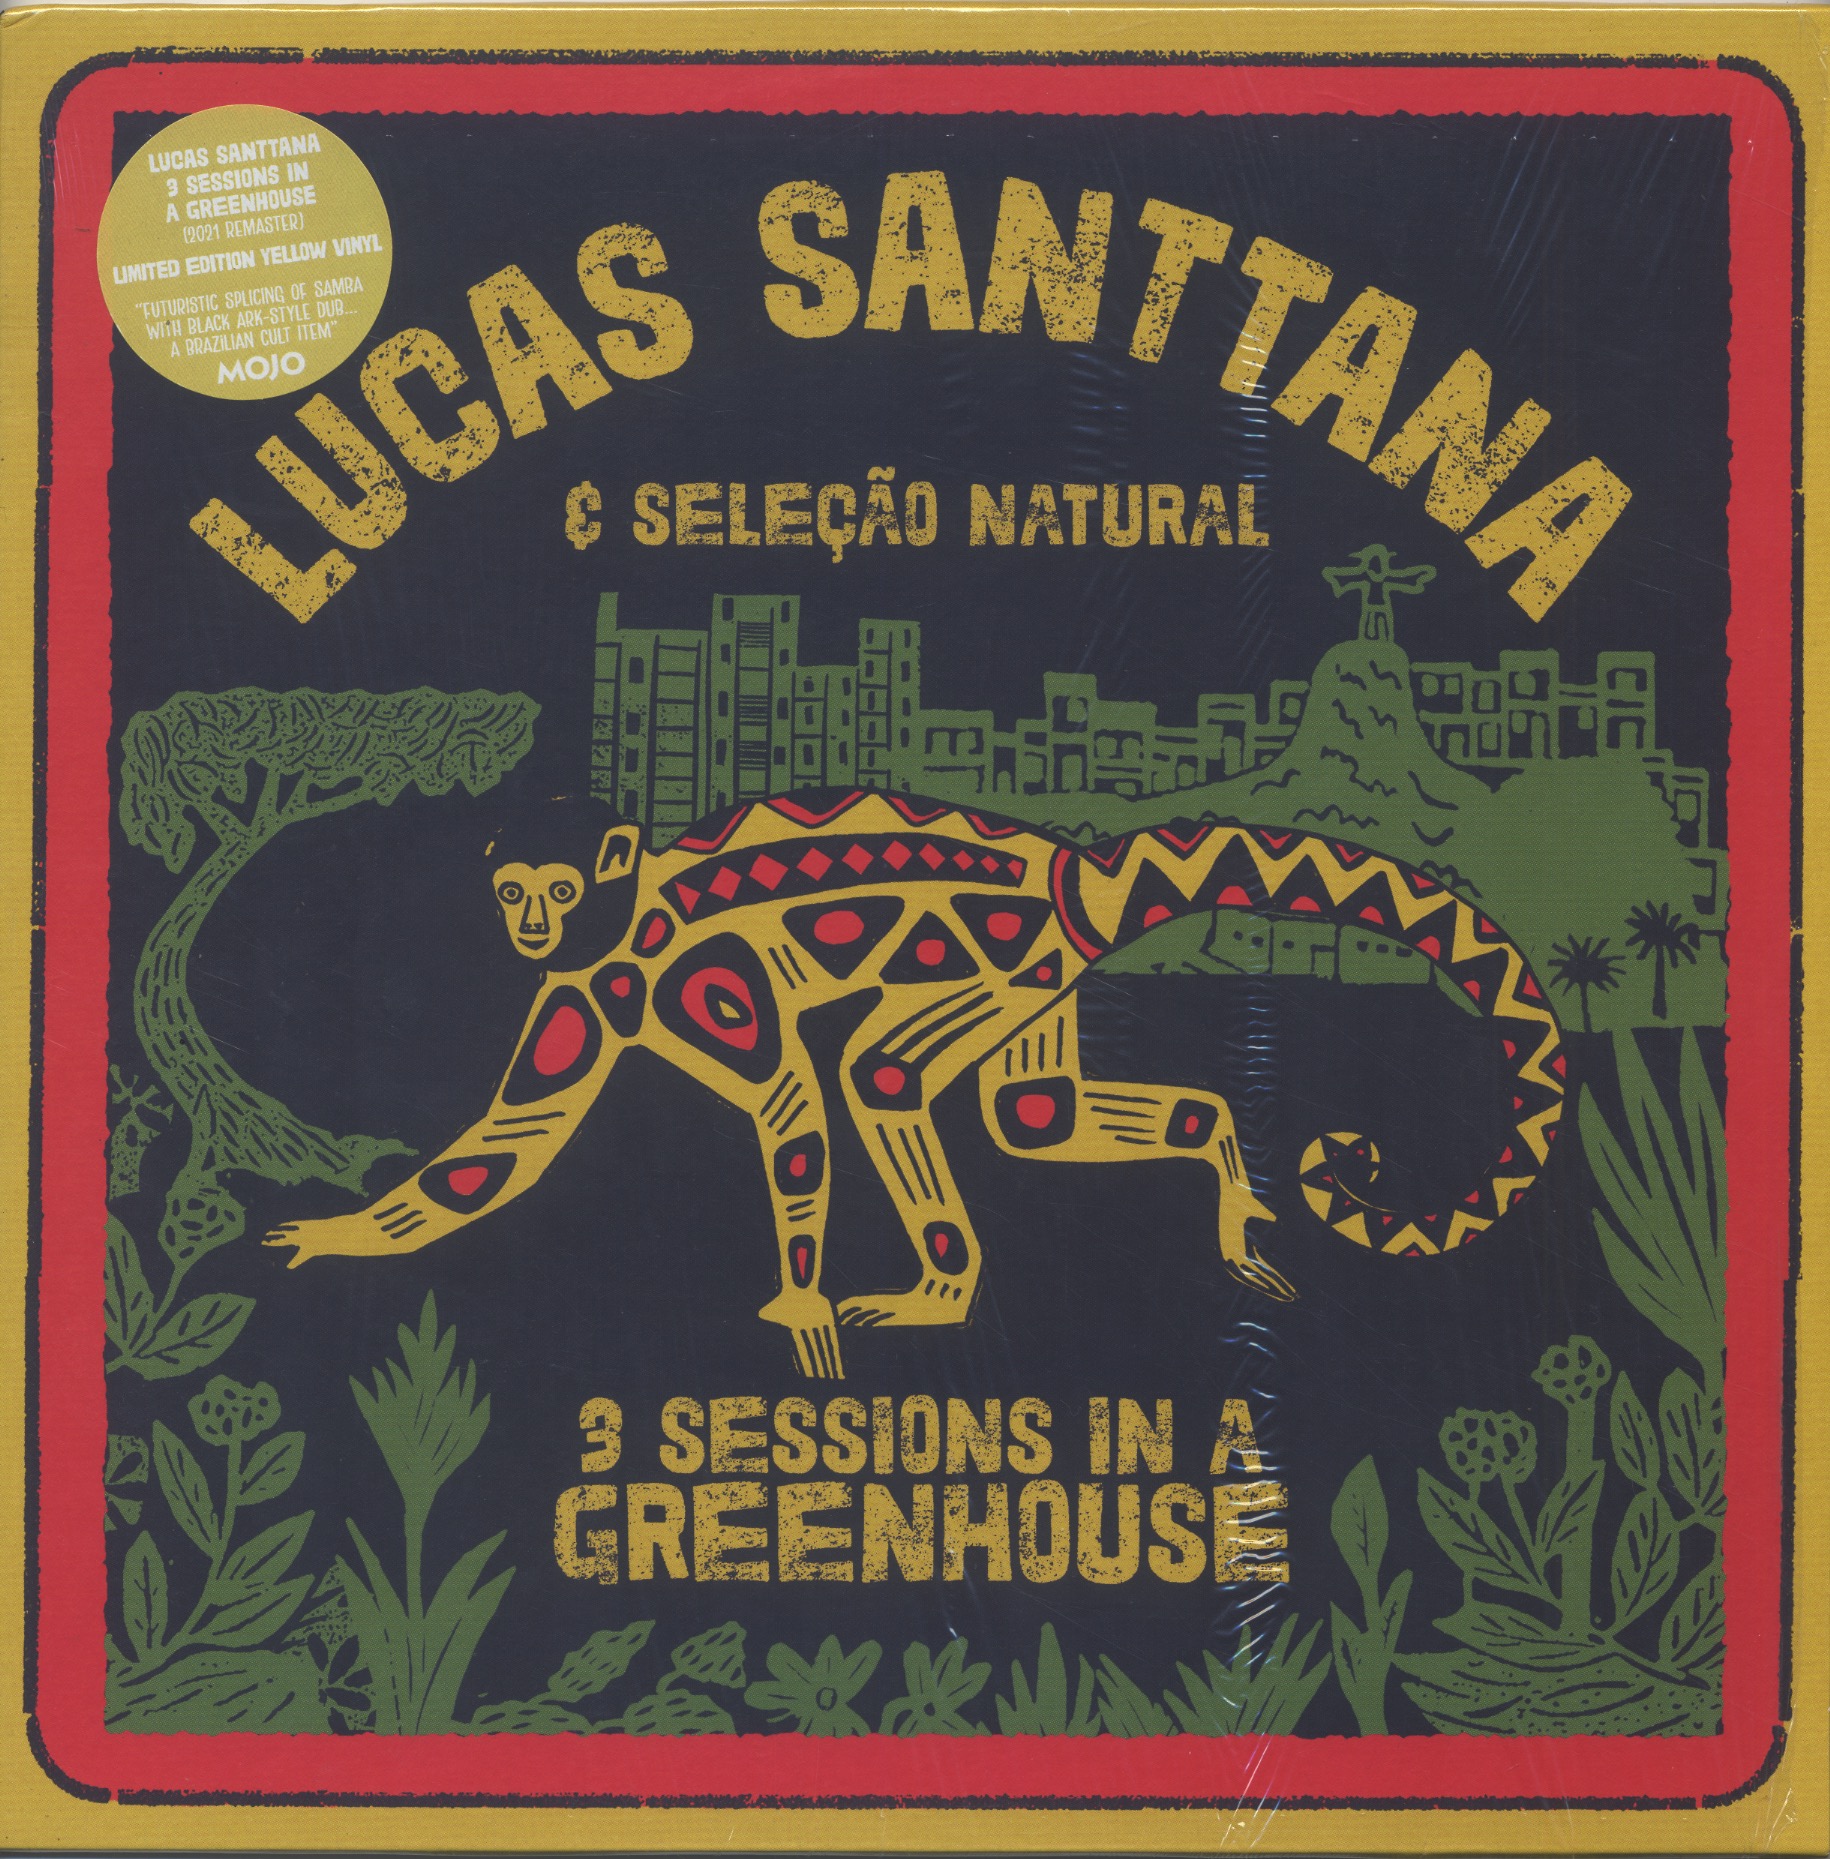 Lucas Santtana E Seleção Natural / 3 Sessions In A Greenhouse